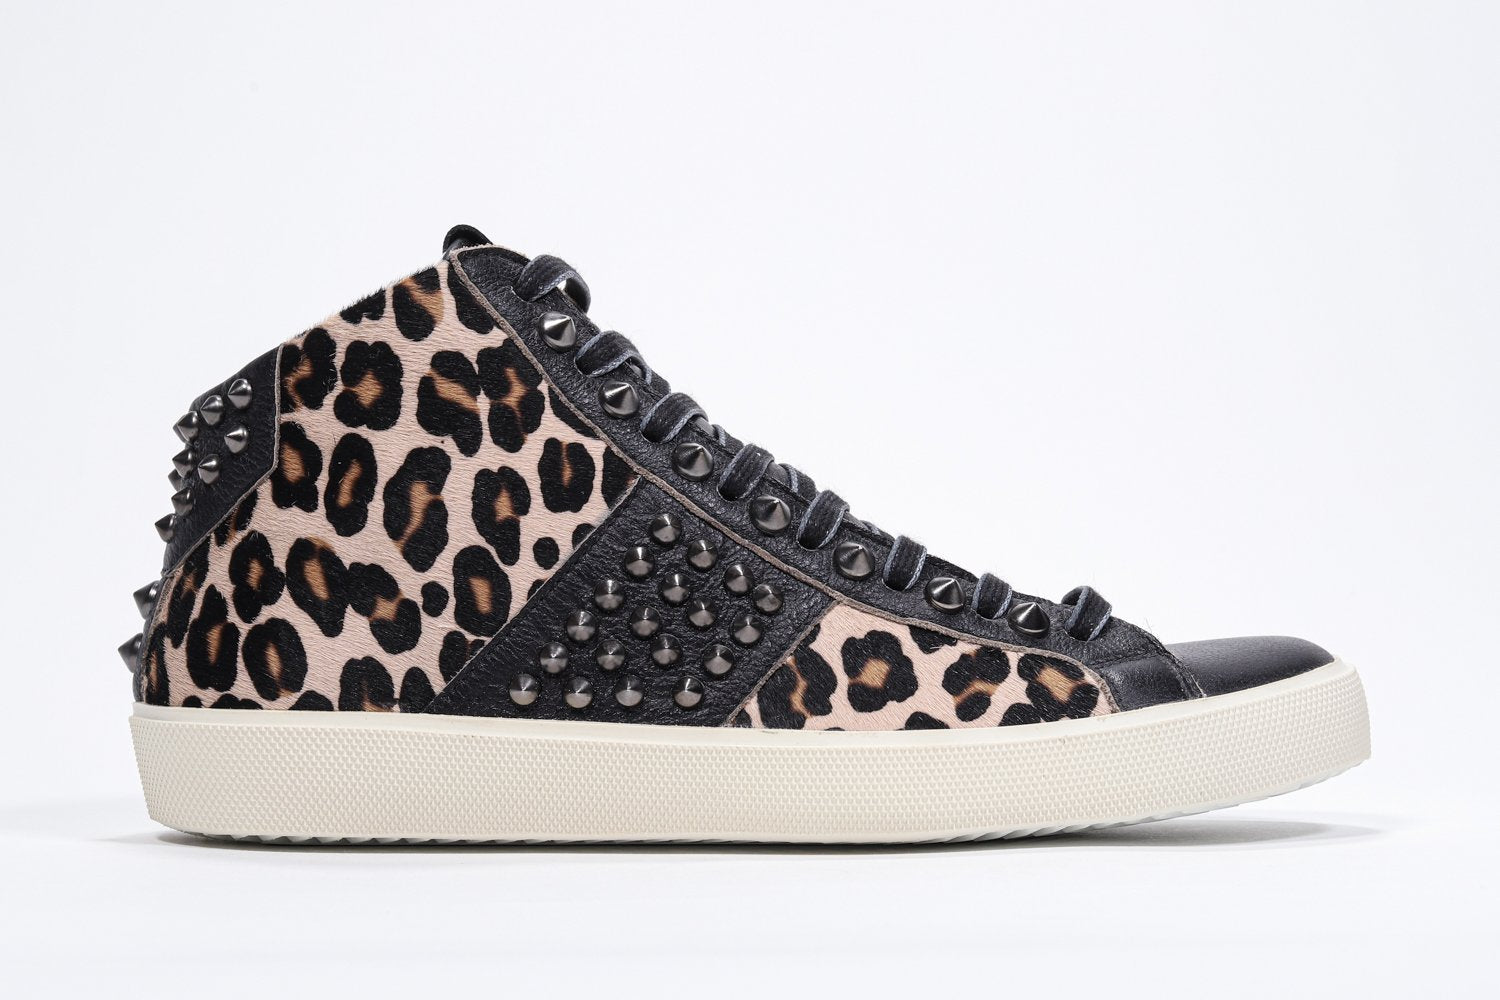 Profil latéral d'un modèle intermédiaire à imprimé léopard sneaker. Tige en cuir et poils avec clous, fermeture éclair intérieure et semelle en caoutchouc vintage.